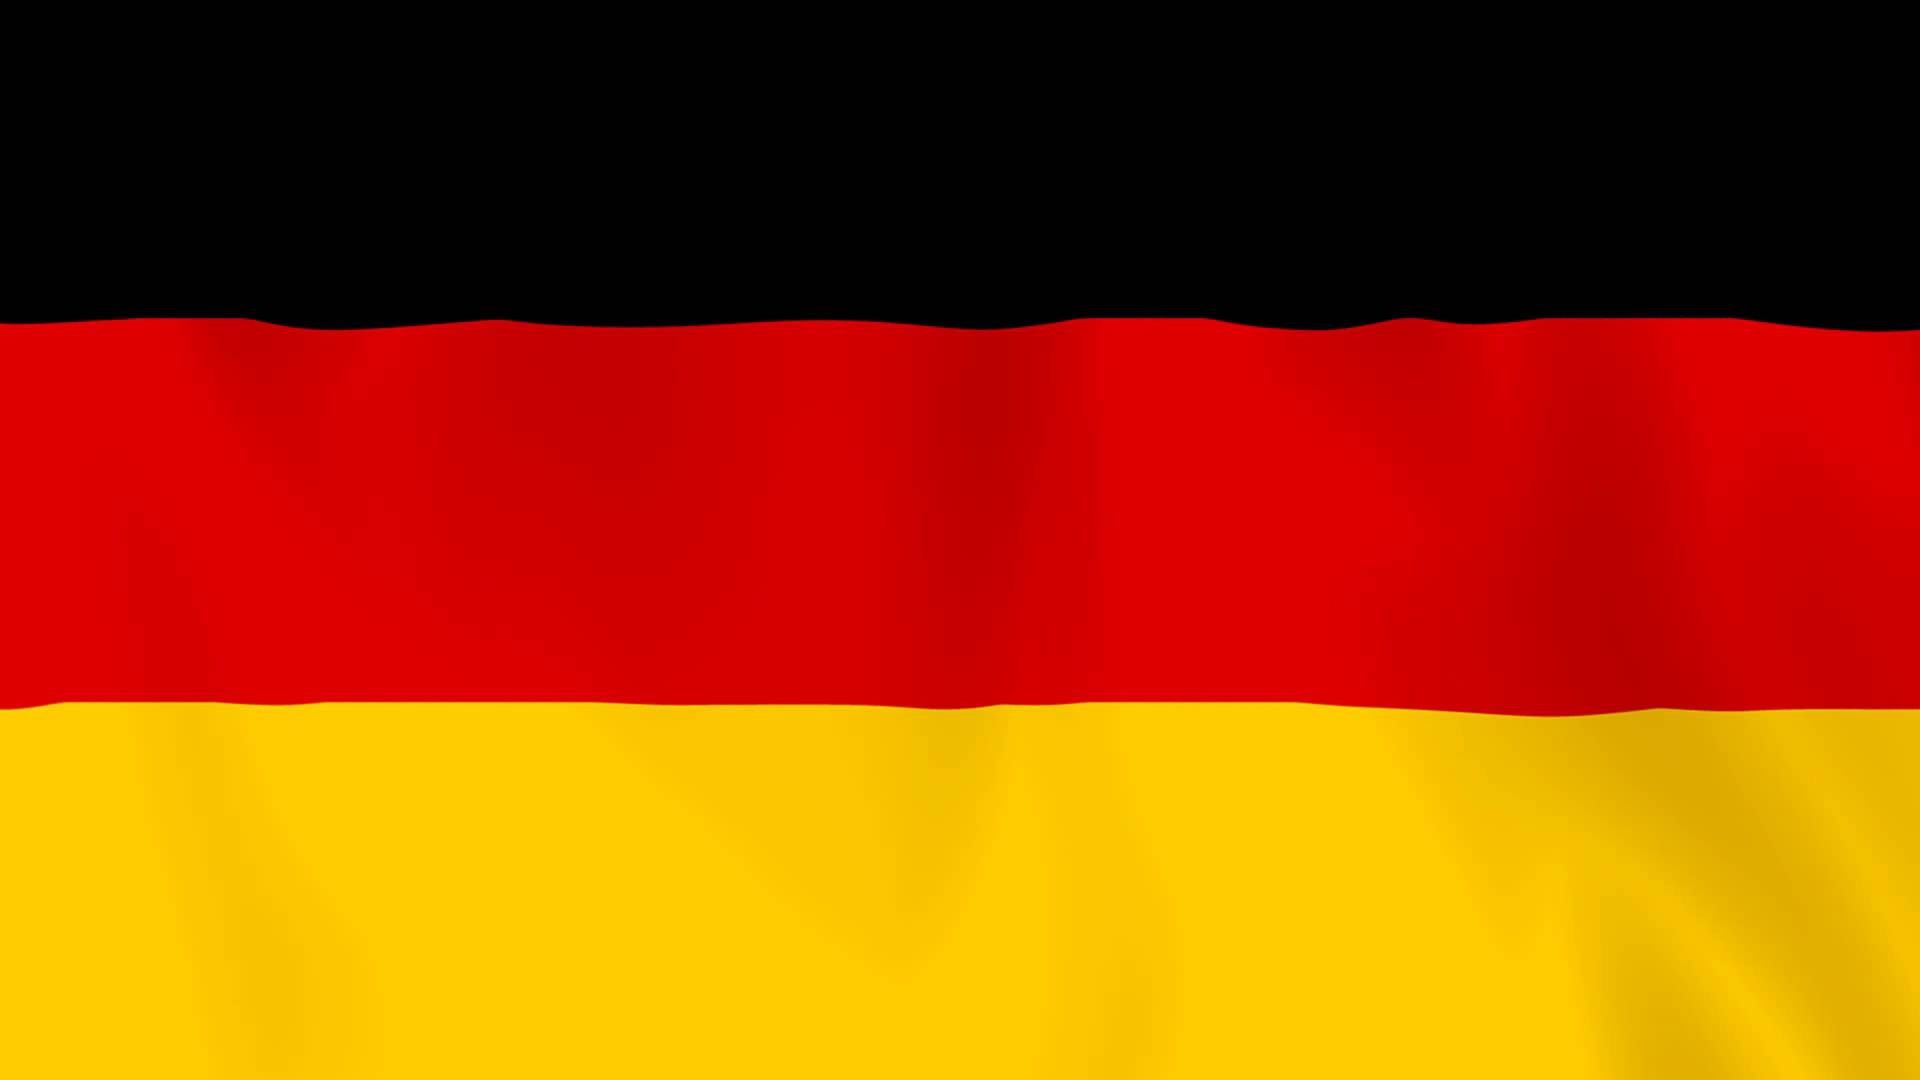 Germany National Anthem (Instrumental)